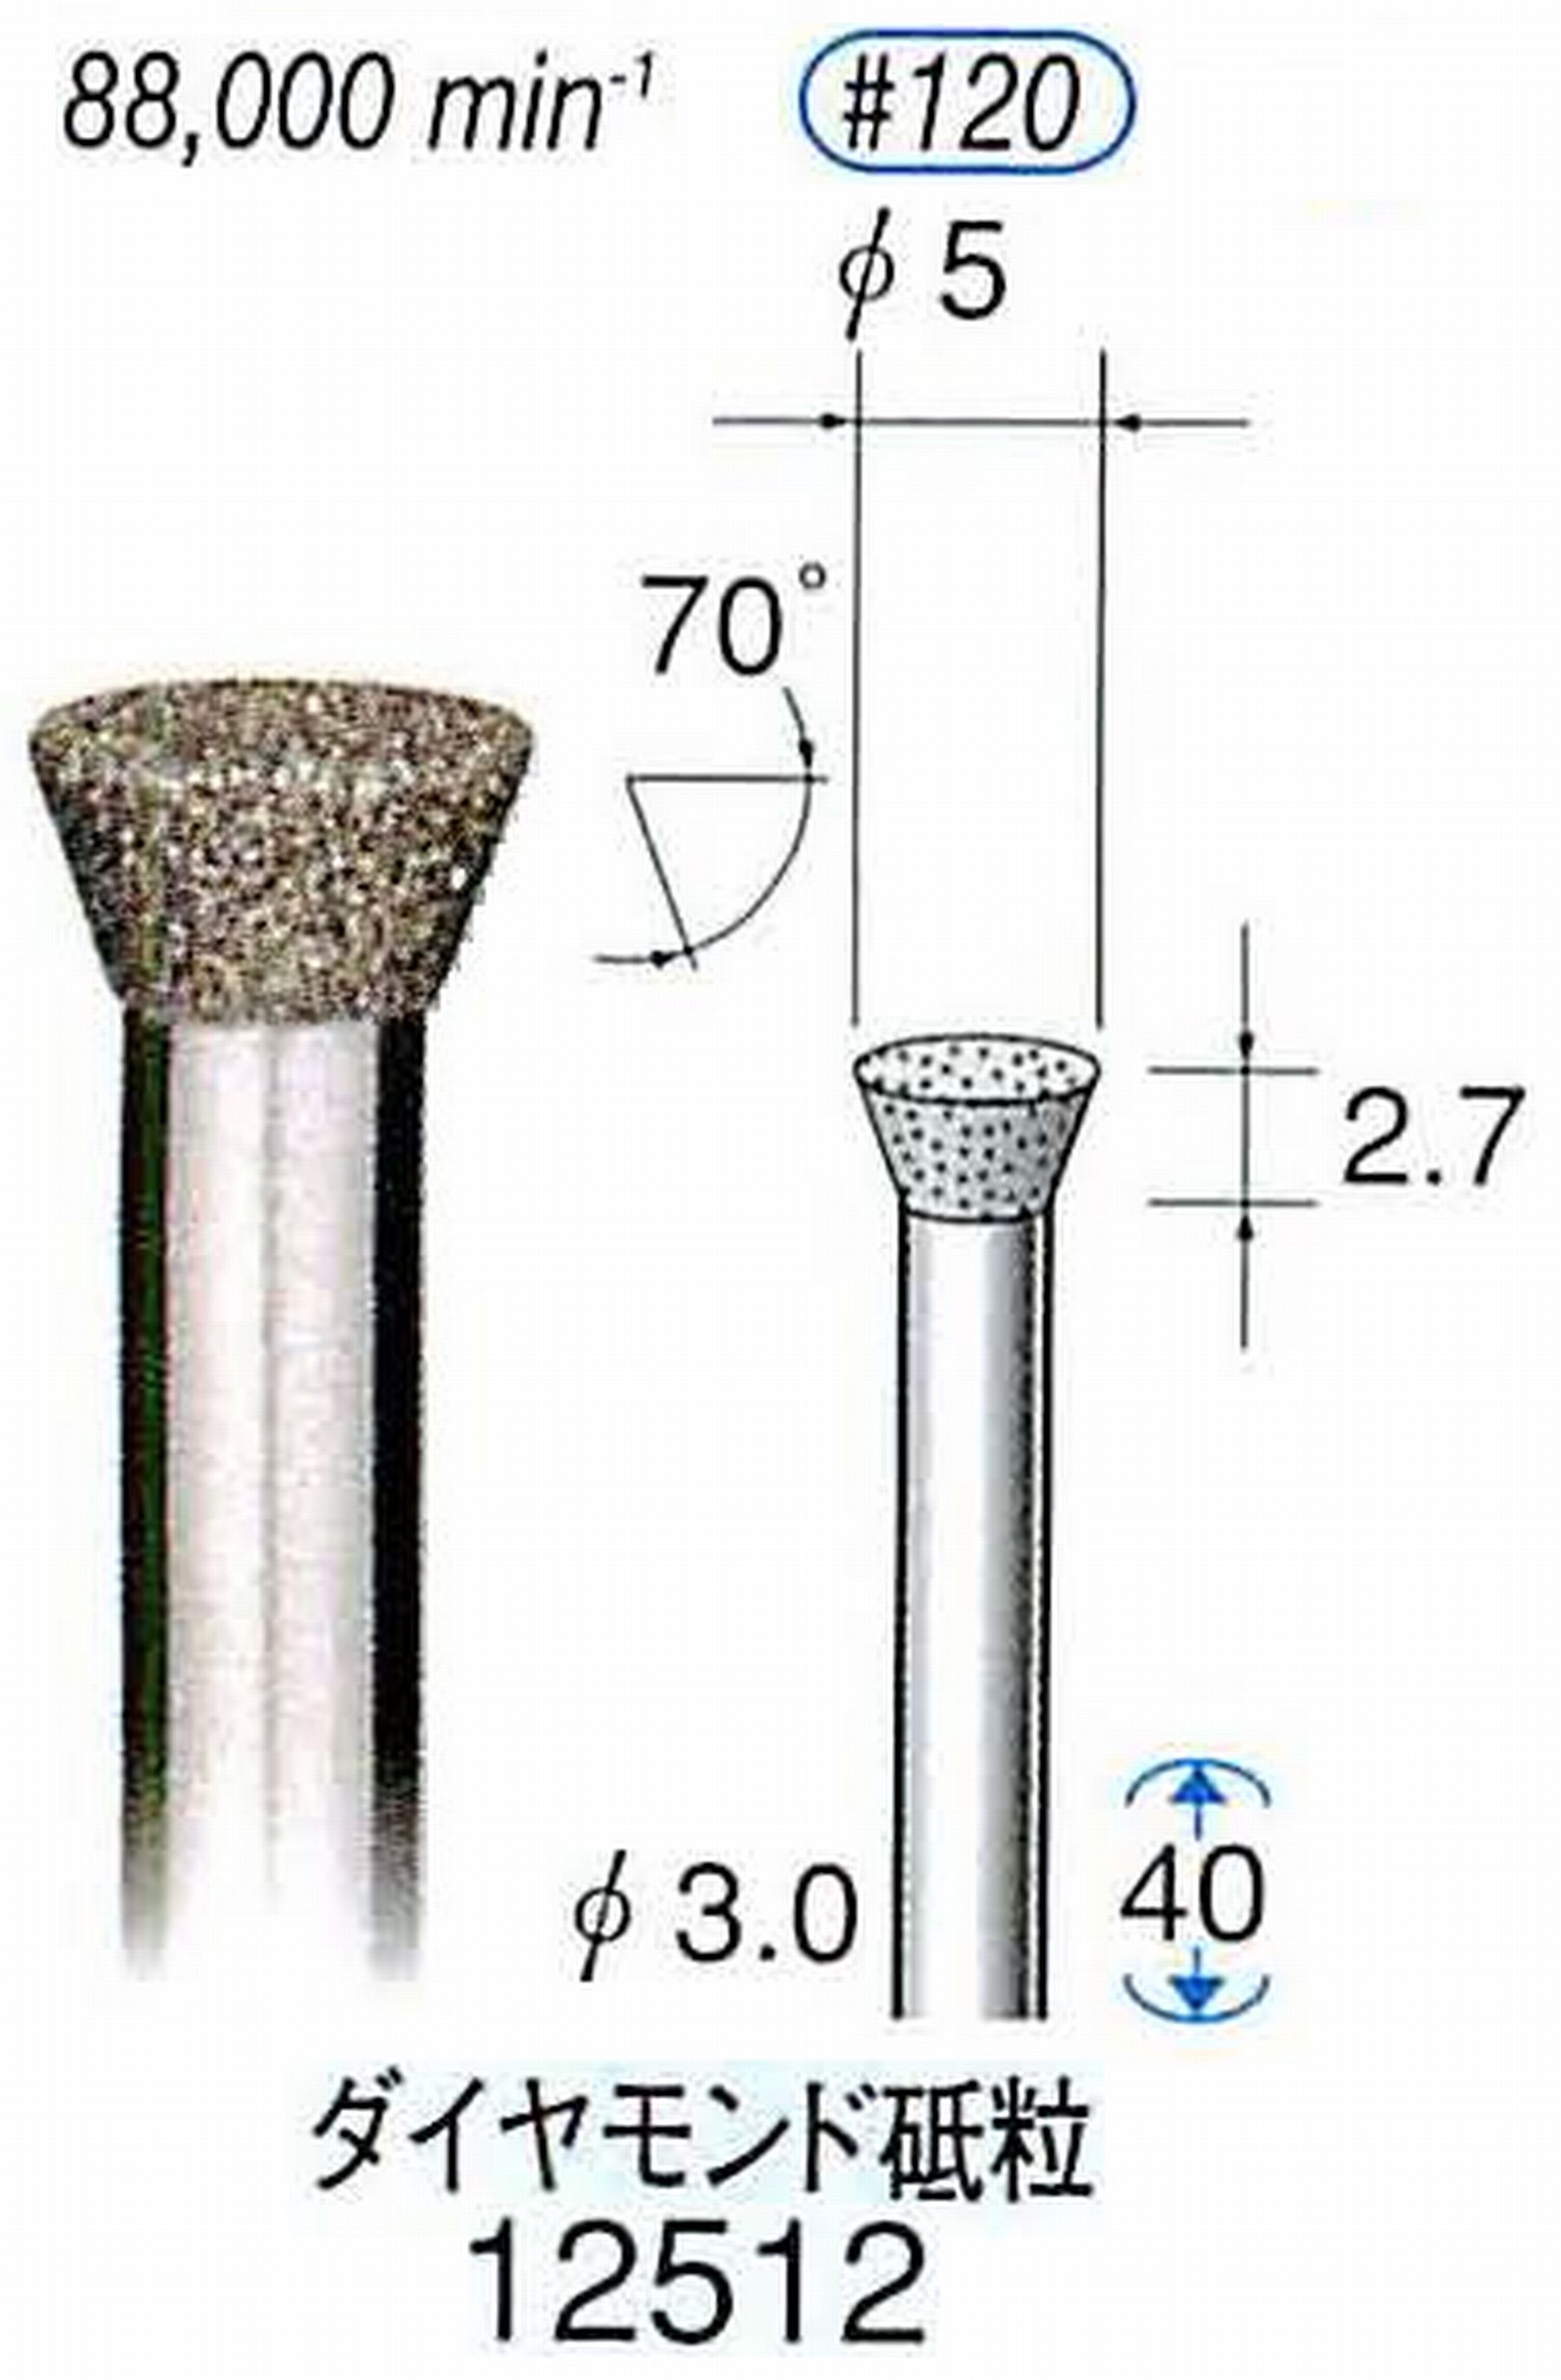 ナカニシ/NAKANISHI 電着ダイヤモンド ダイヤモンド砥粒 軸径(シャンク)φ3.0mm 12512